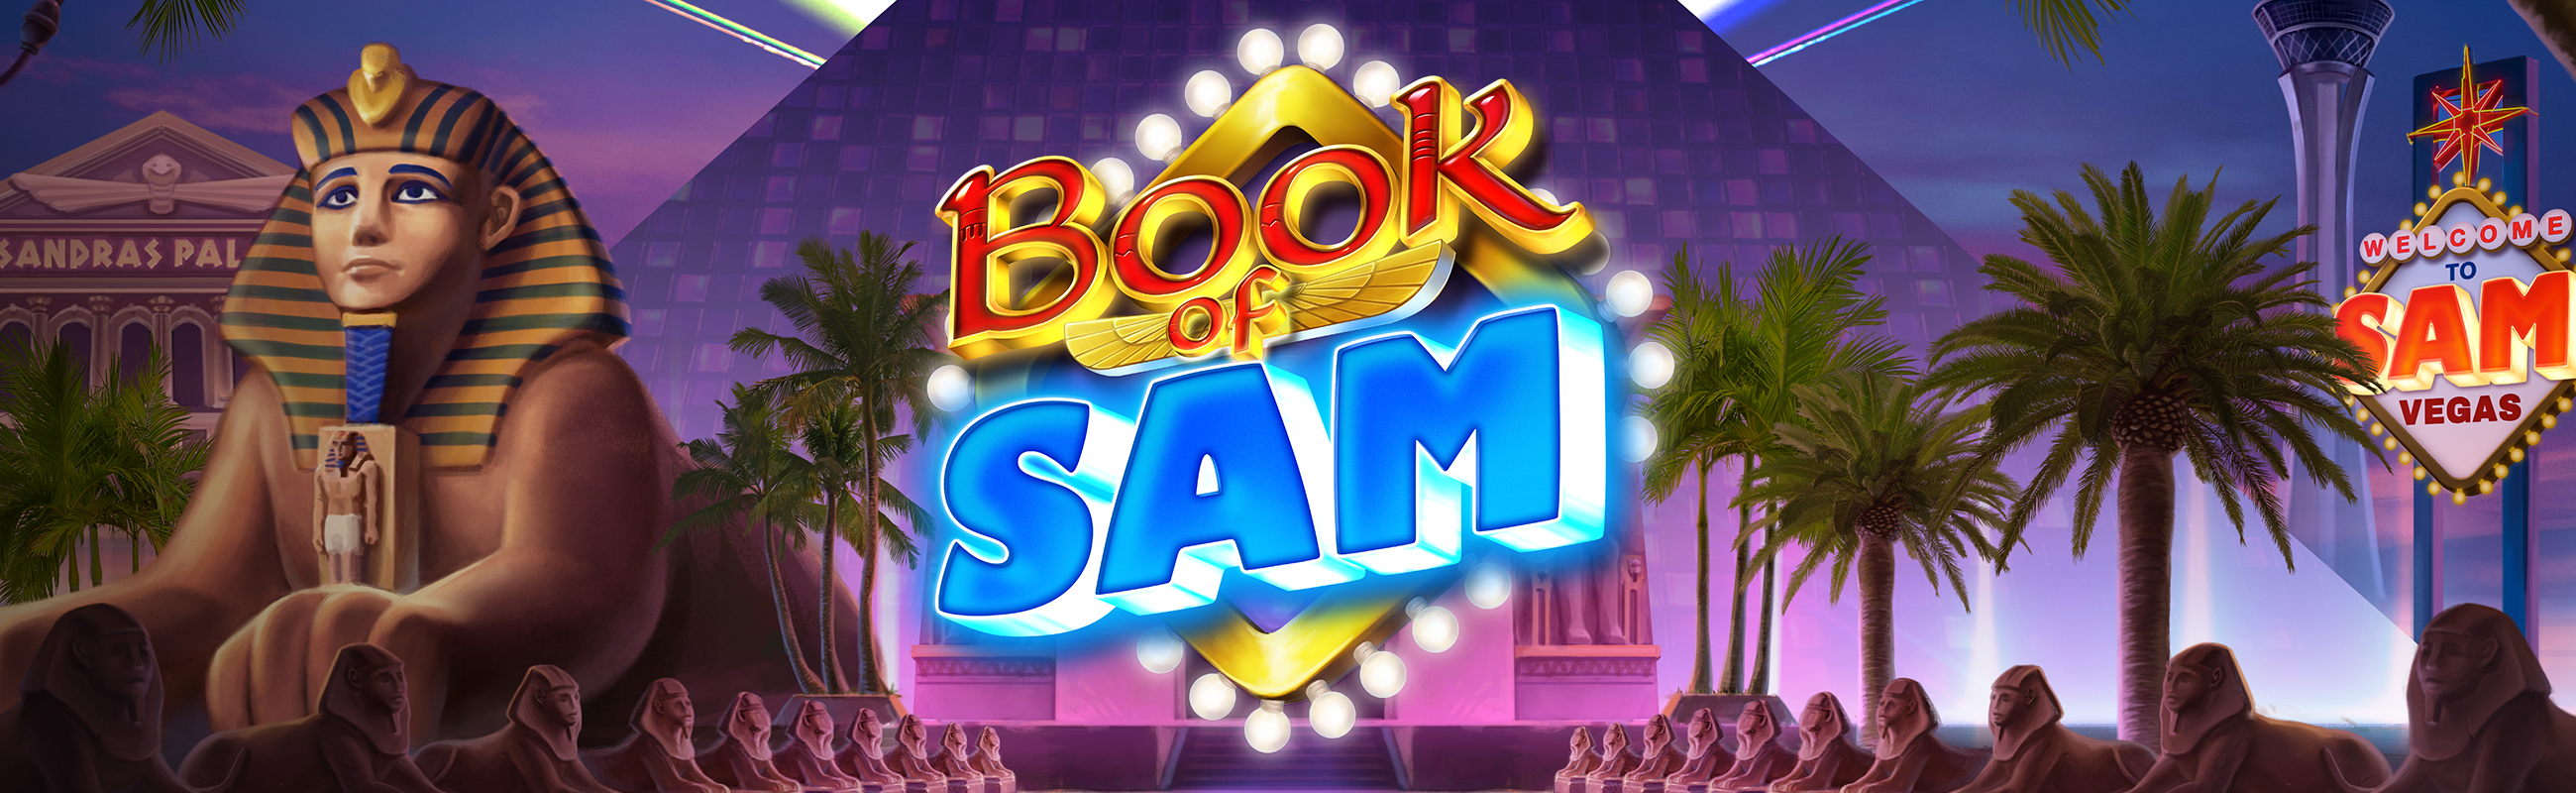 Book of Sam slots